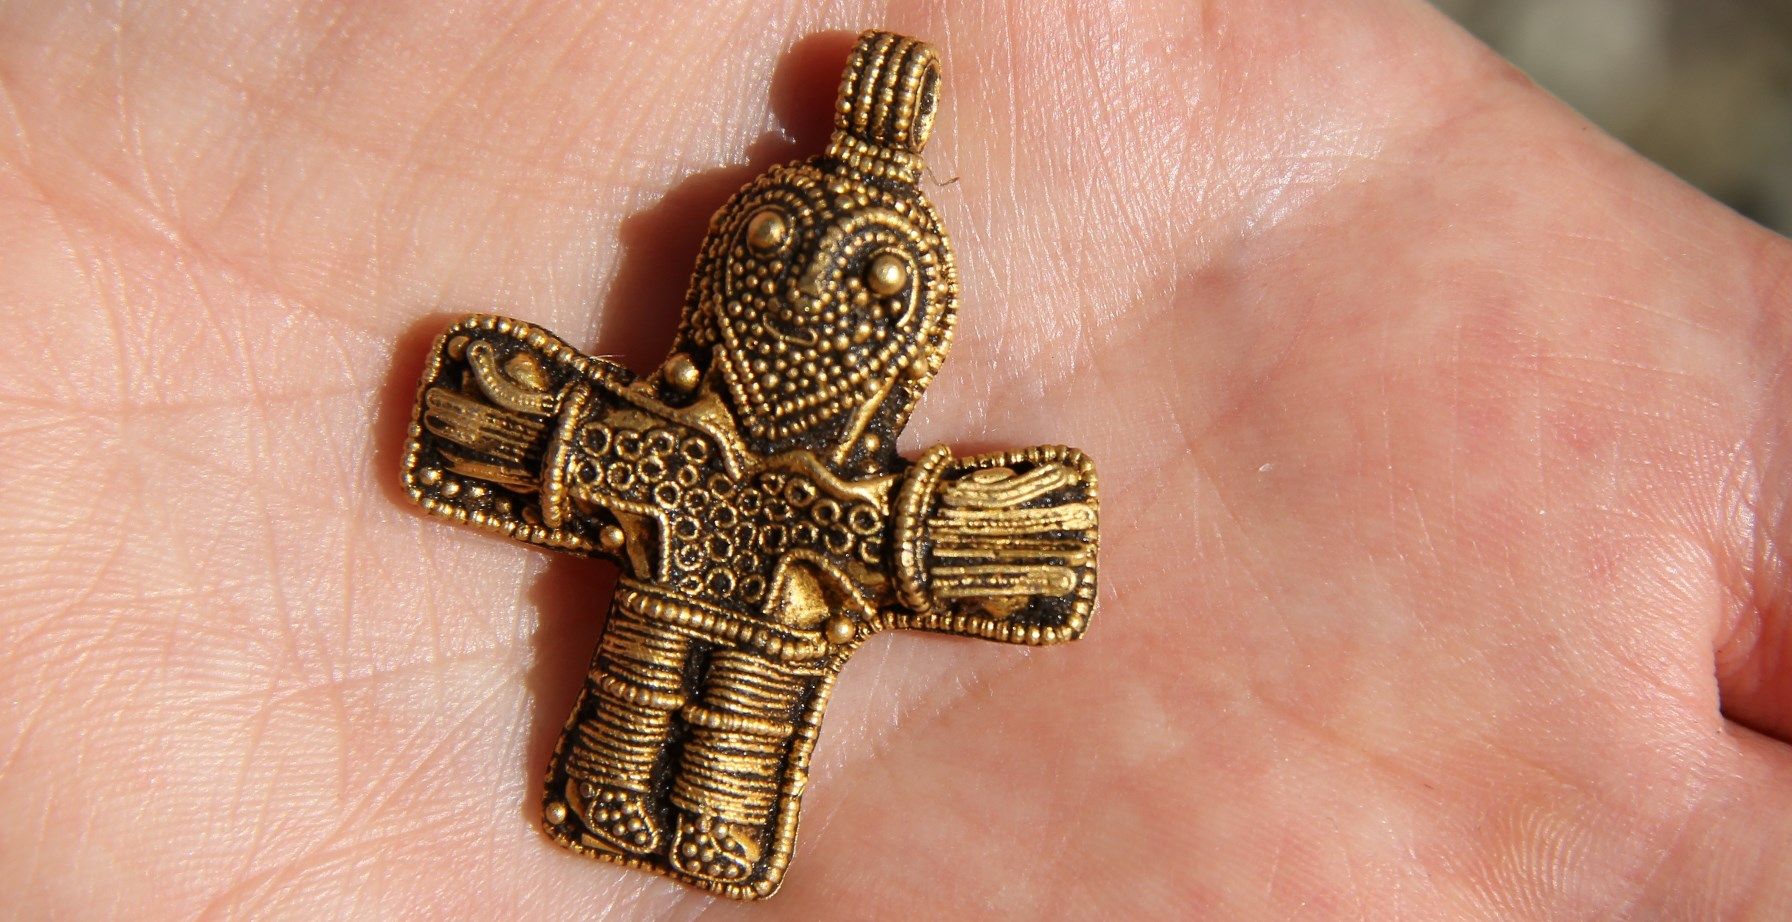 Amateur archaeologist finds Denmark’s oldest crucifix